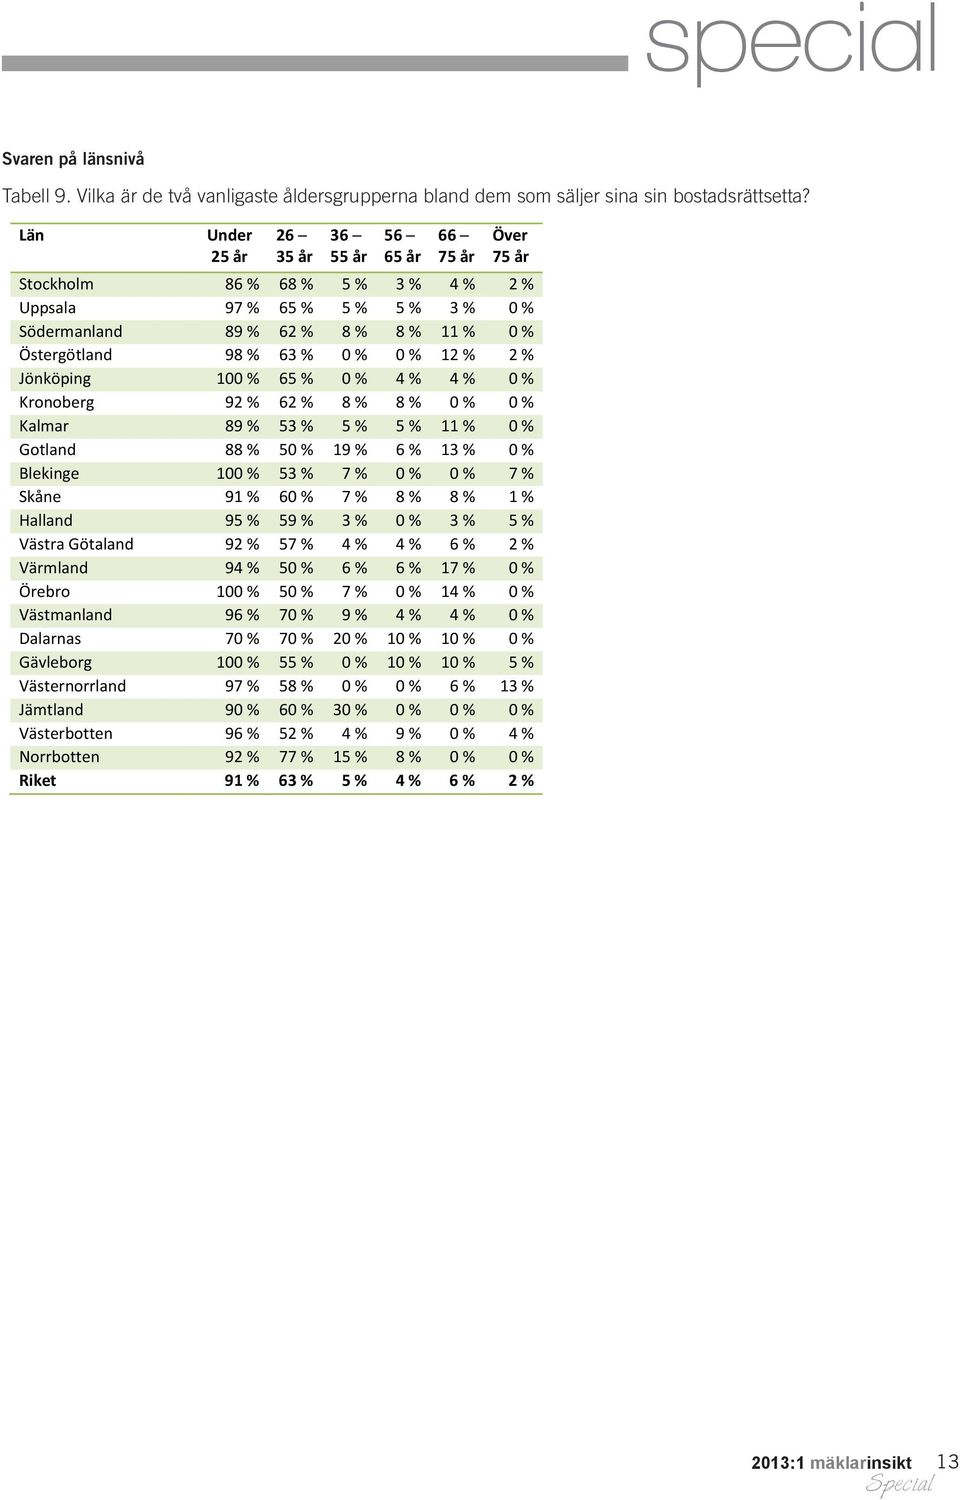 Jönköping 100 % 65 % 0 % 4 % 4 % 0 % Kronoberg 92 % 62 % 8 % 8 % 0 % 0 % Kalmar 89 % 53 % 5 % 5 % 11 % 0 % Gotland 88 % 50 % 19 % 6 % 13 % 0 % Blekinge 100 % 53 % 7 % 0 % 0 % 7 % Skåne 91 % 60 % 7 %